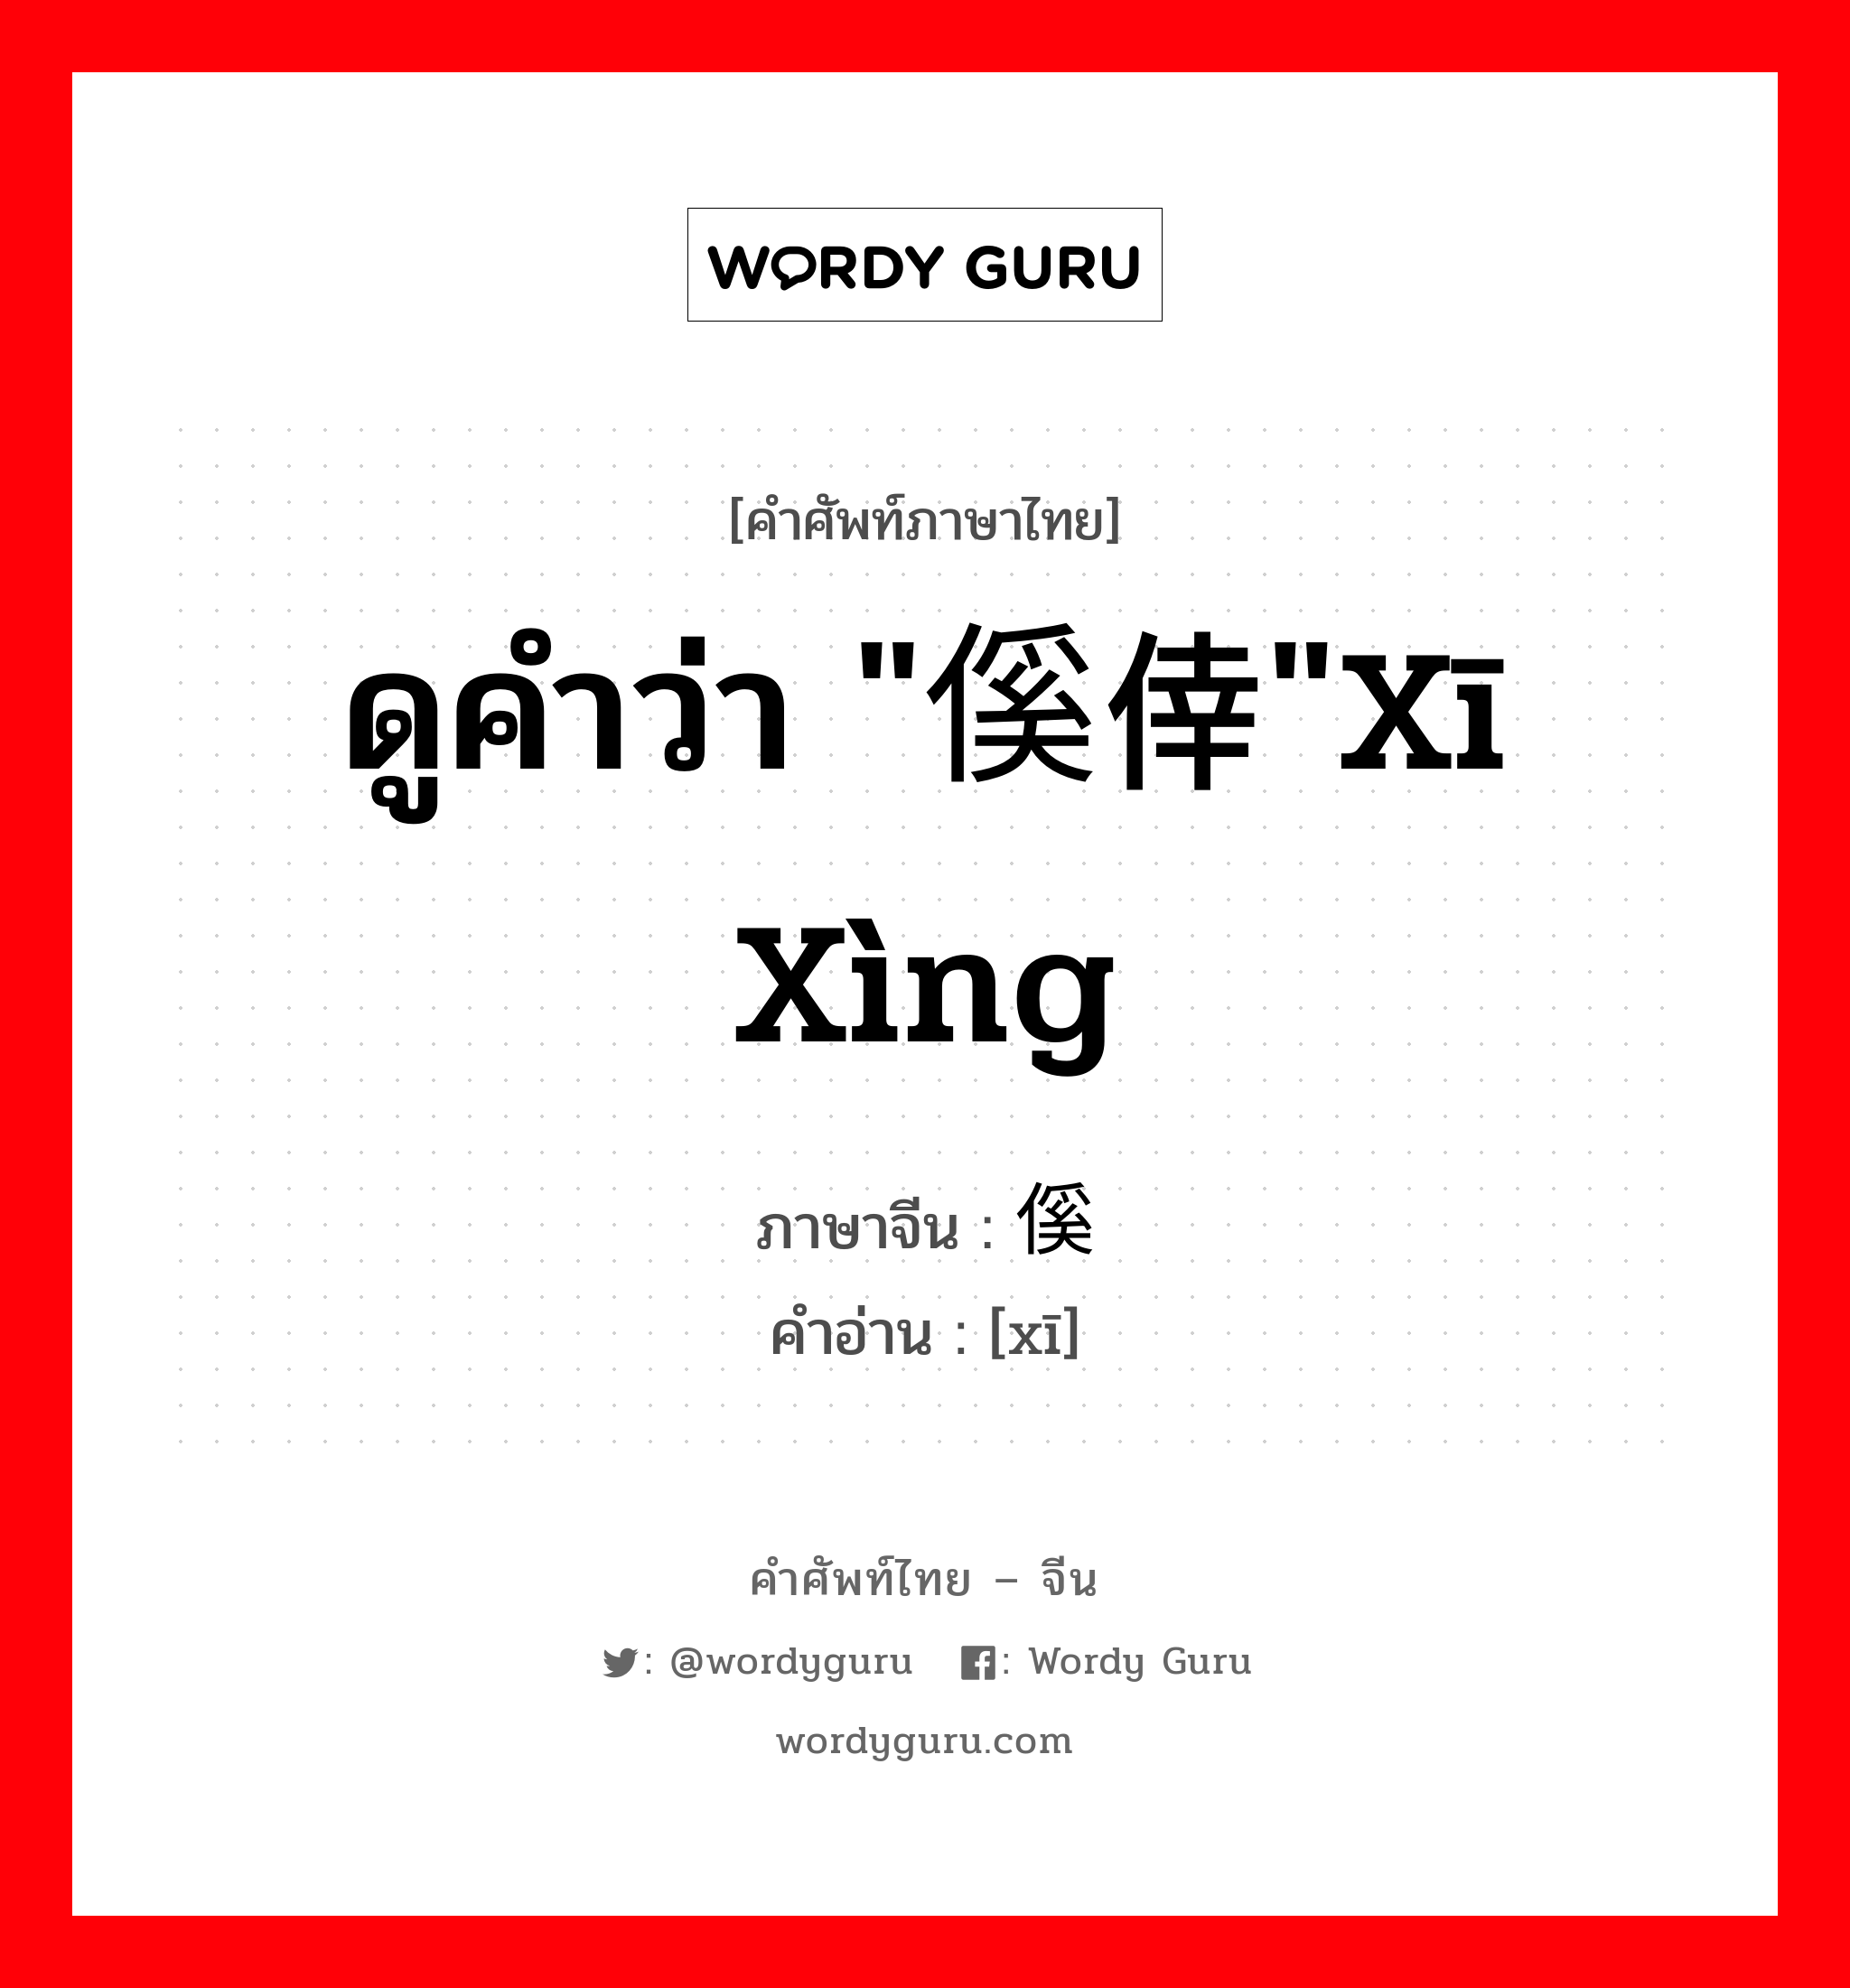 傒 ภาษาไทย?, คำศัพท์ภาษาไทย - จีน 傒 ภาษาจีน ดูคำว่า "傒倖"xī xìng คำอ่าน [xī]